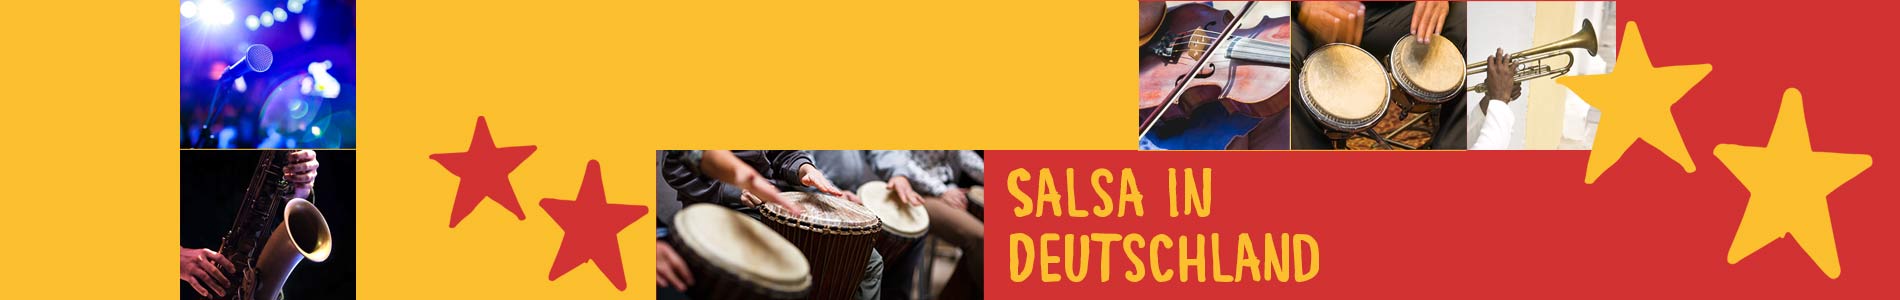 Salsa in Crostwitz – Salsa lernen und tanzen, Tanzkurse, Partys, Veranstaltungen